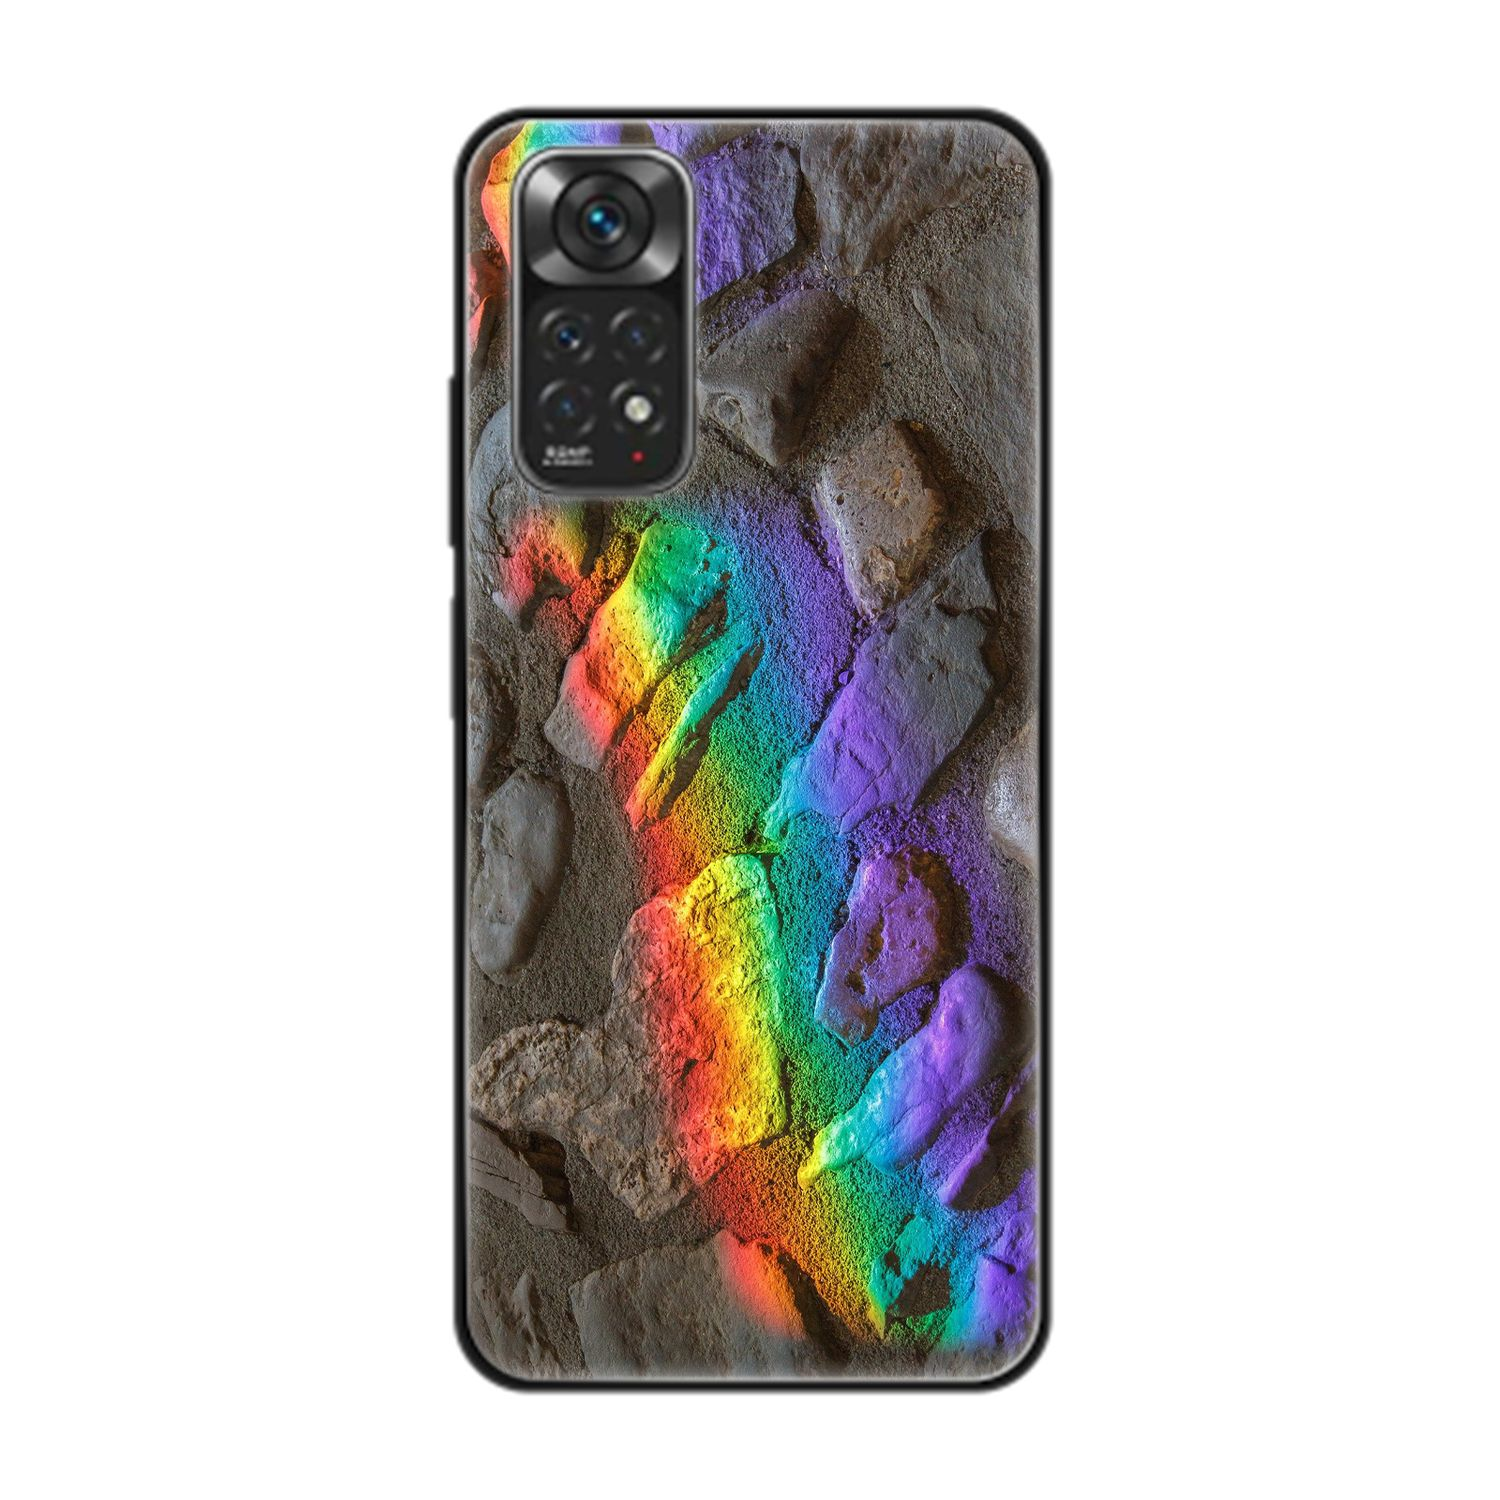 Steine Xiaomi, Note Regenbogen Backcover, KÖNIG DESIGN 11, Redmi Case,